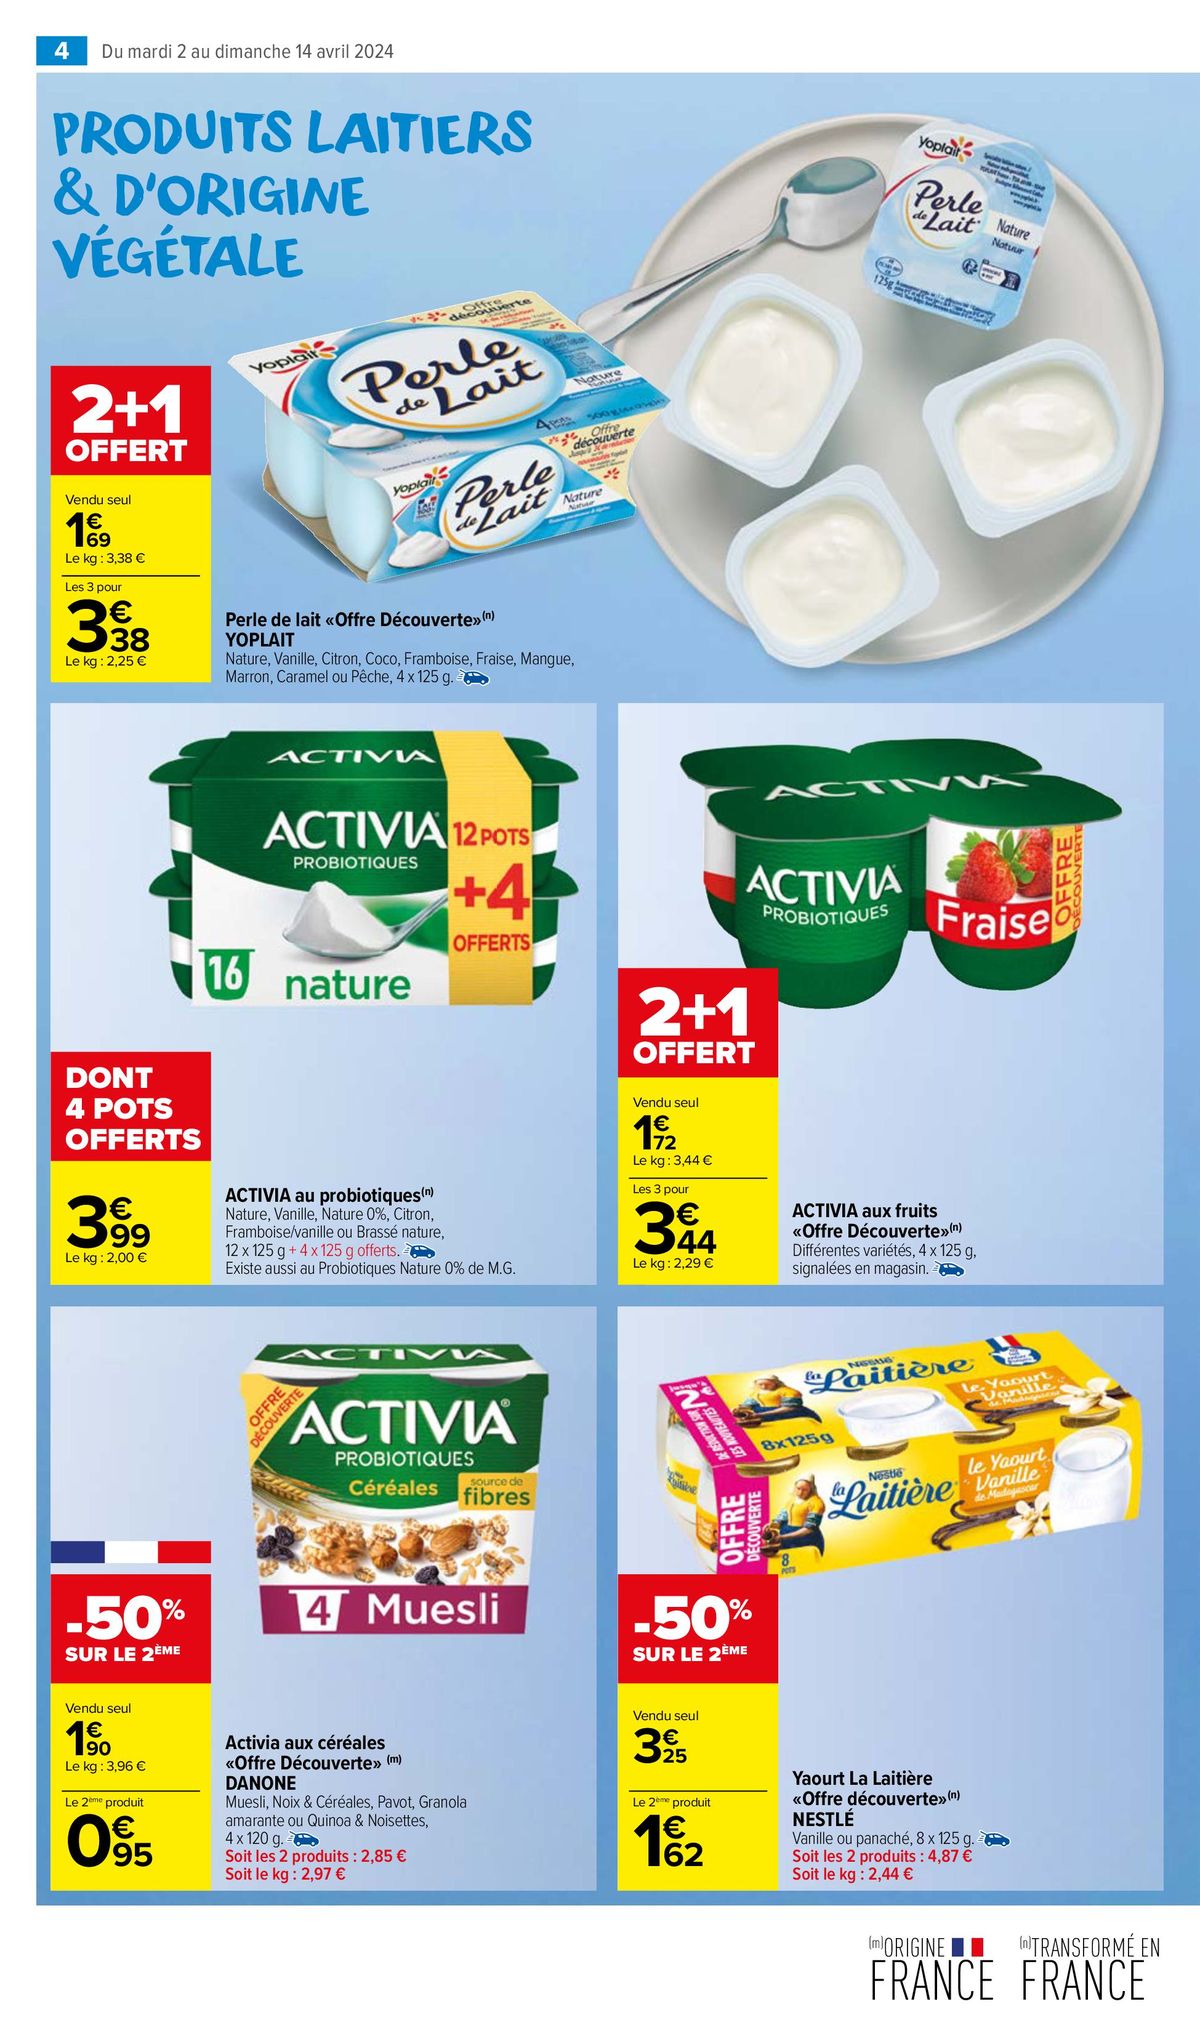 Catalogue Un MIAM pour les produits laitiers, page 00008